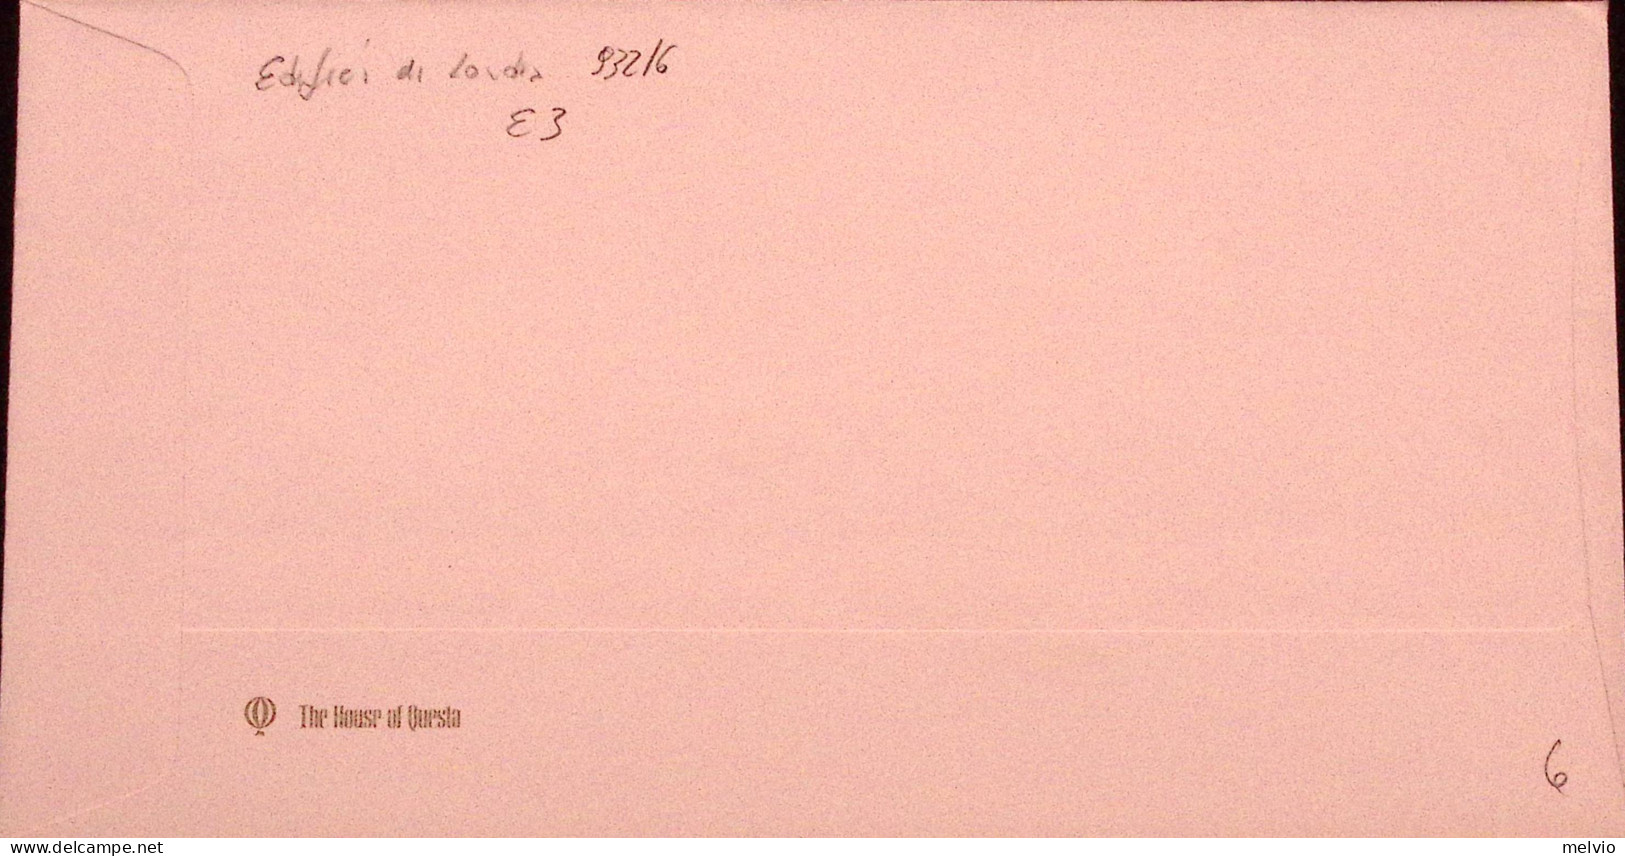 1980-GRAN BRETAGNA GREAT BRITAIN Edifici Di Londra Serie Cpl. (932/6) Fdc - Covers & Documents